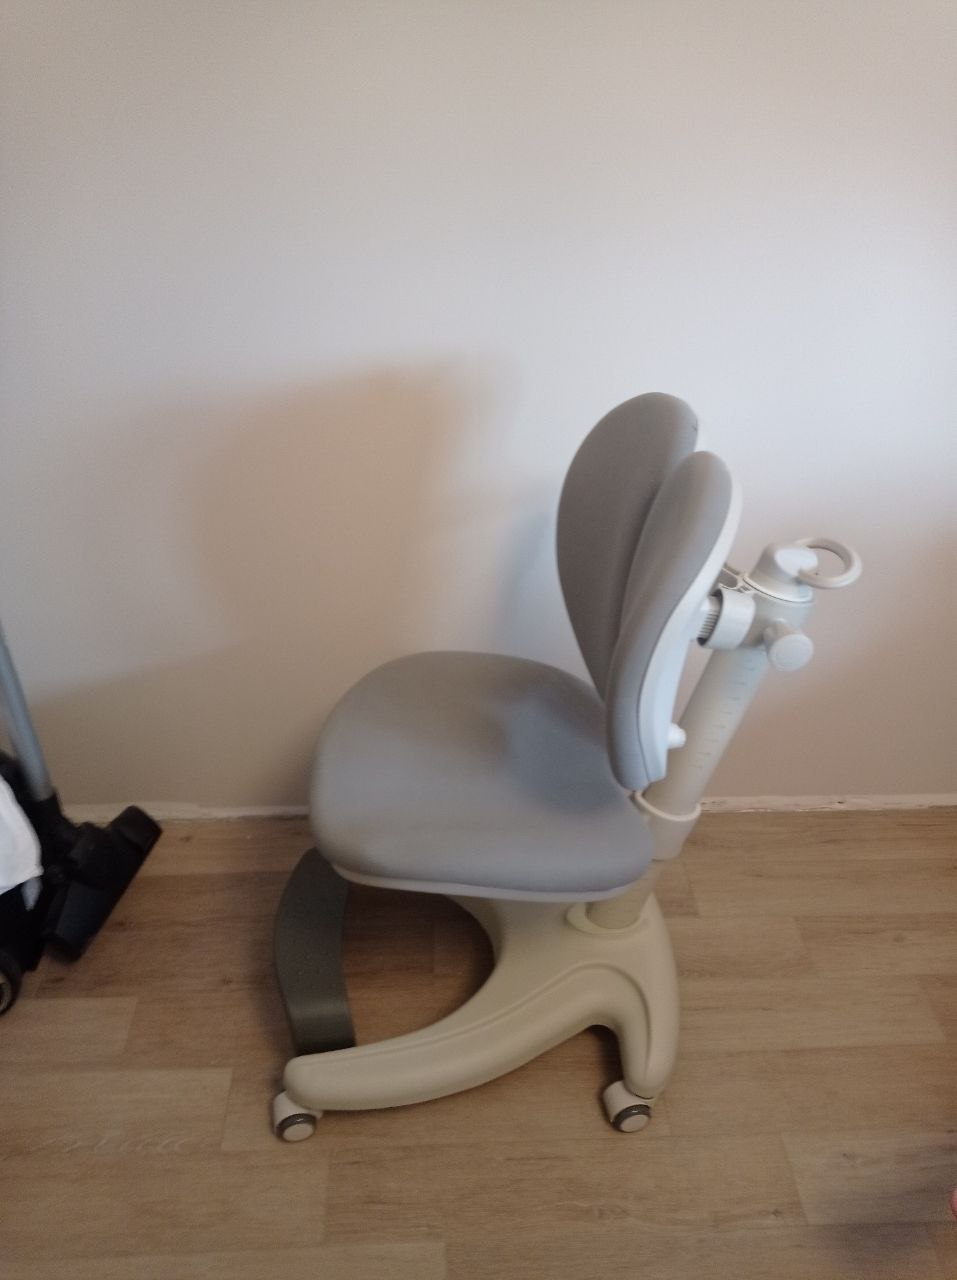 Детское ортопедическое кресло FUN DESK Solerte купить по низкой цене в  интернет-магазине MebelStol